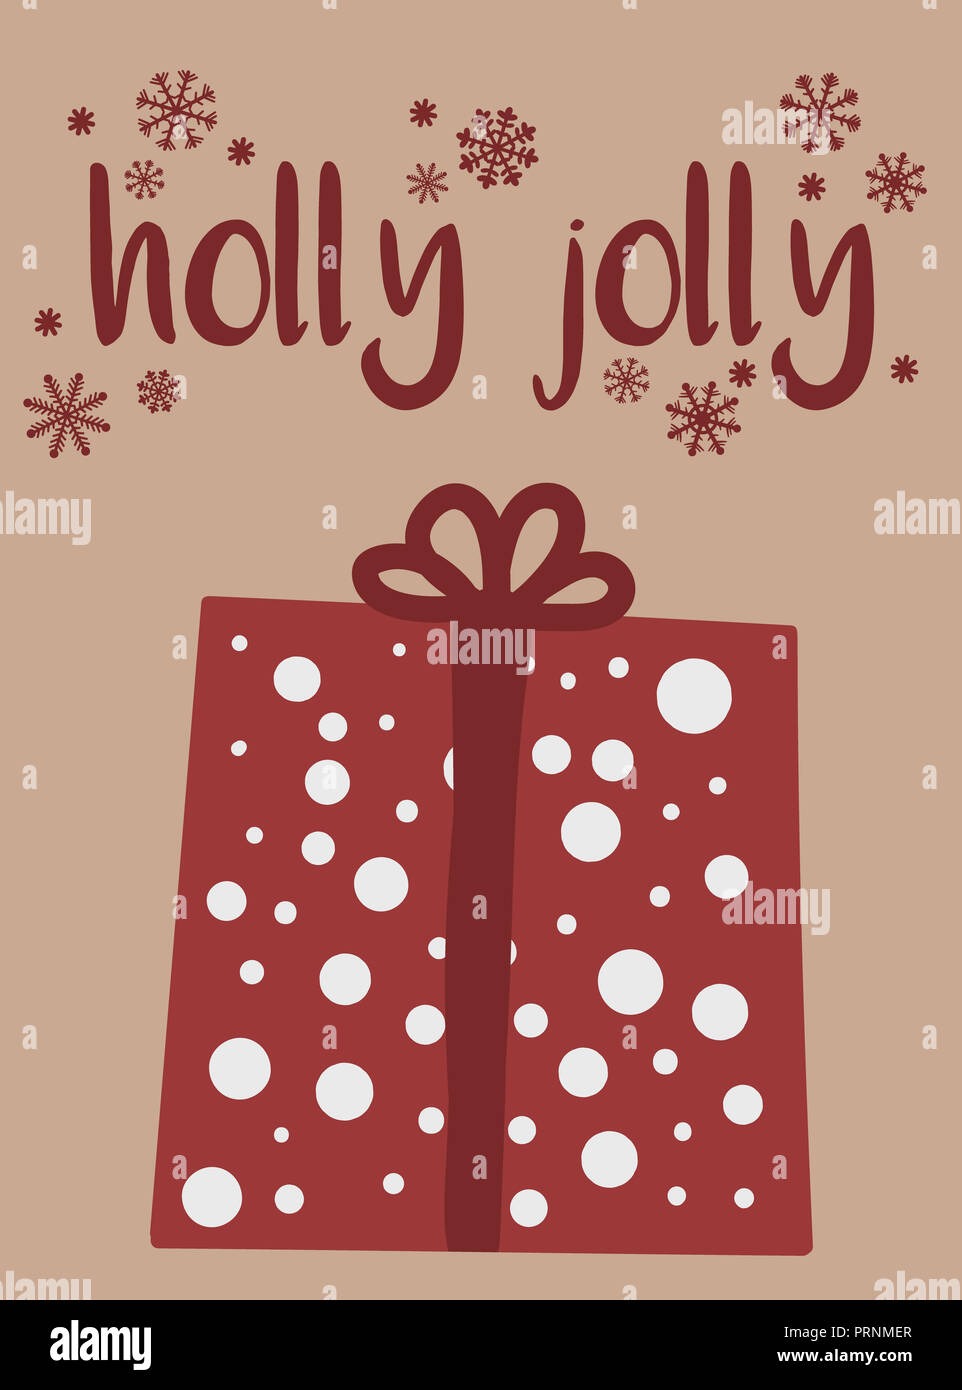 Illustrazione Vettoriale per Capodanno e Natale. Disegnate a mano immagine di un cartoon regalo rossa su uno sfondo beige con una iscrizione holly jolly Foto Stock